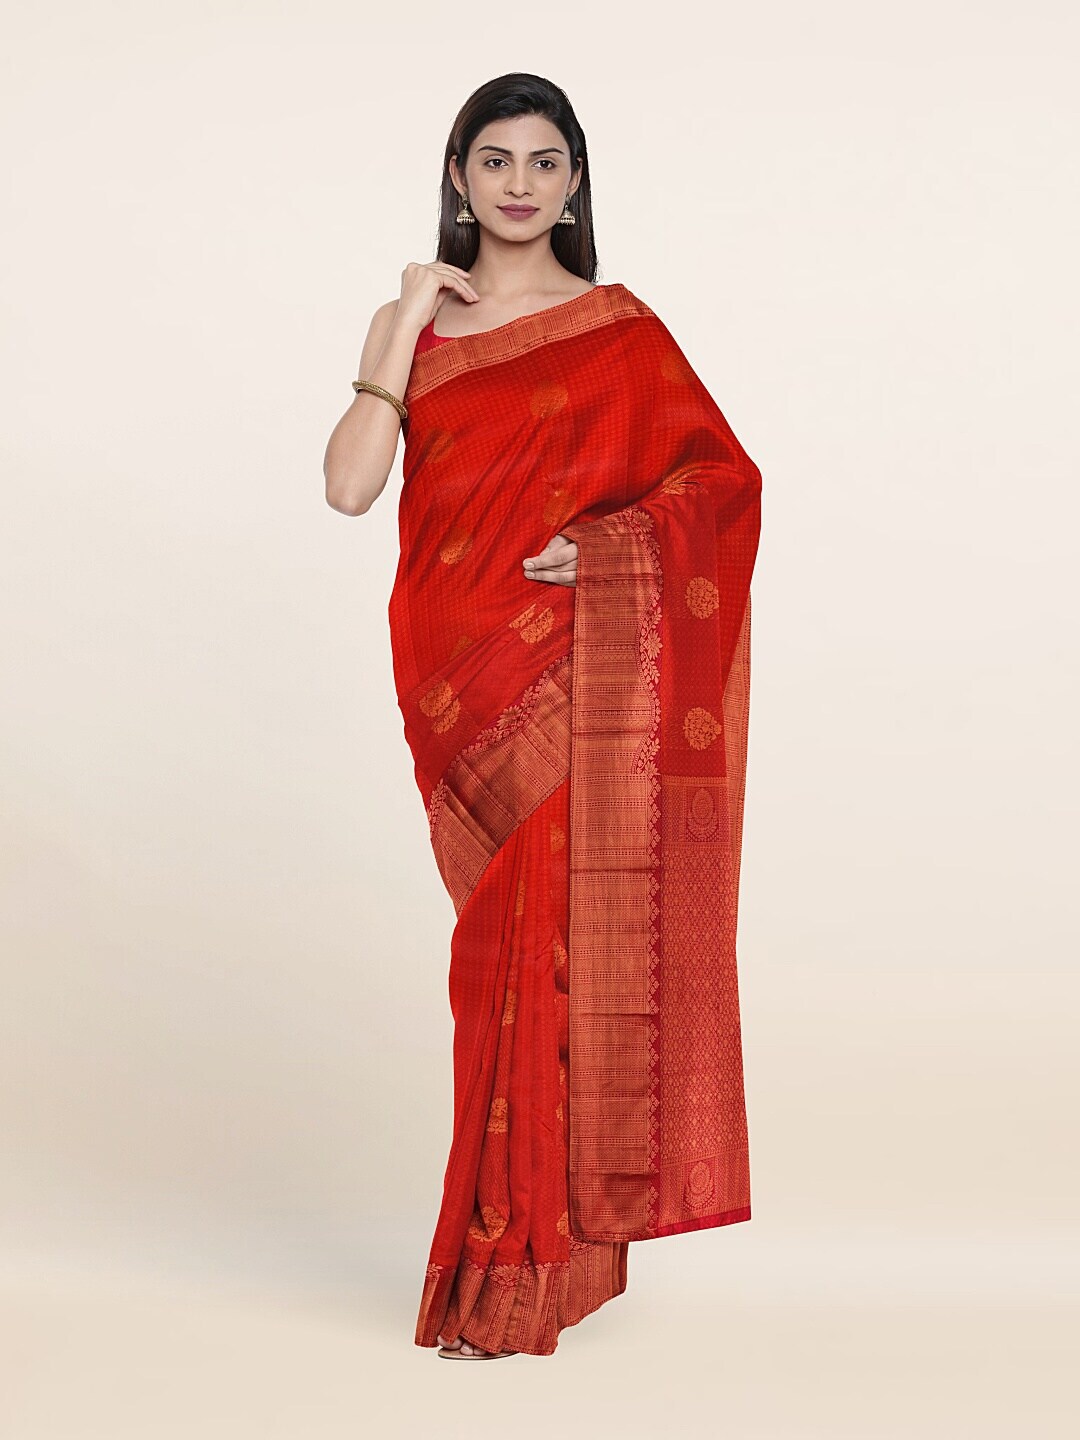 Pothys Red & Copper-Toned Ethnic Motifs Zari Pure Silk Saree Price in India